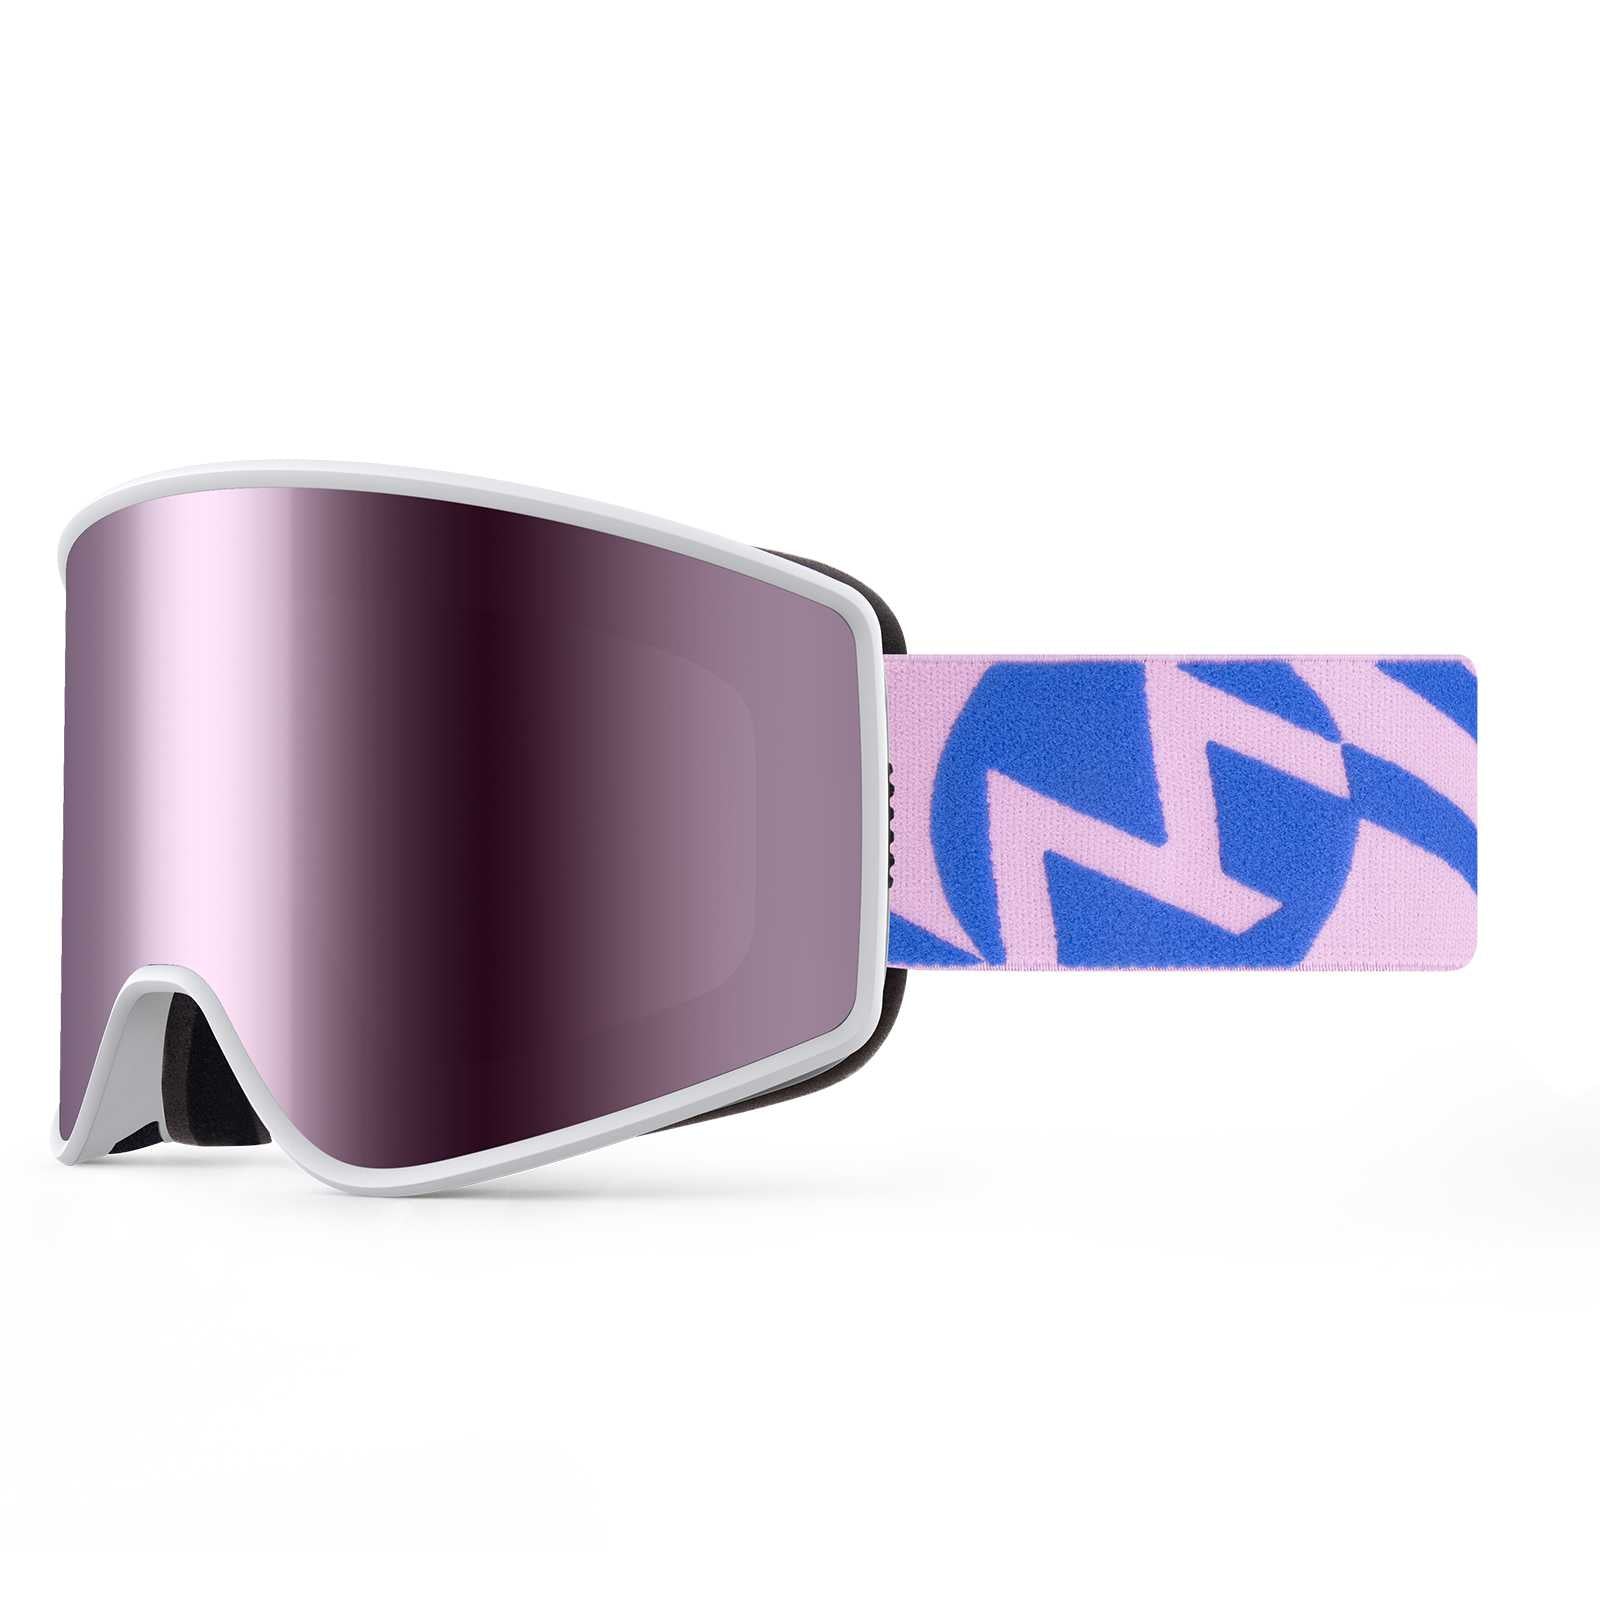 cylindrical ski goggles